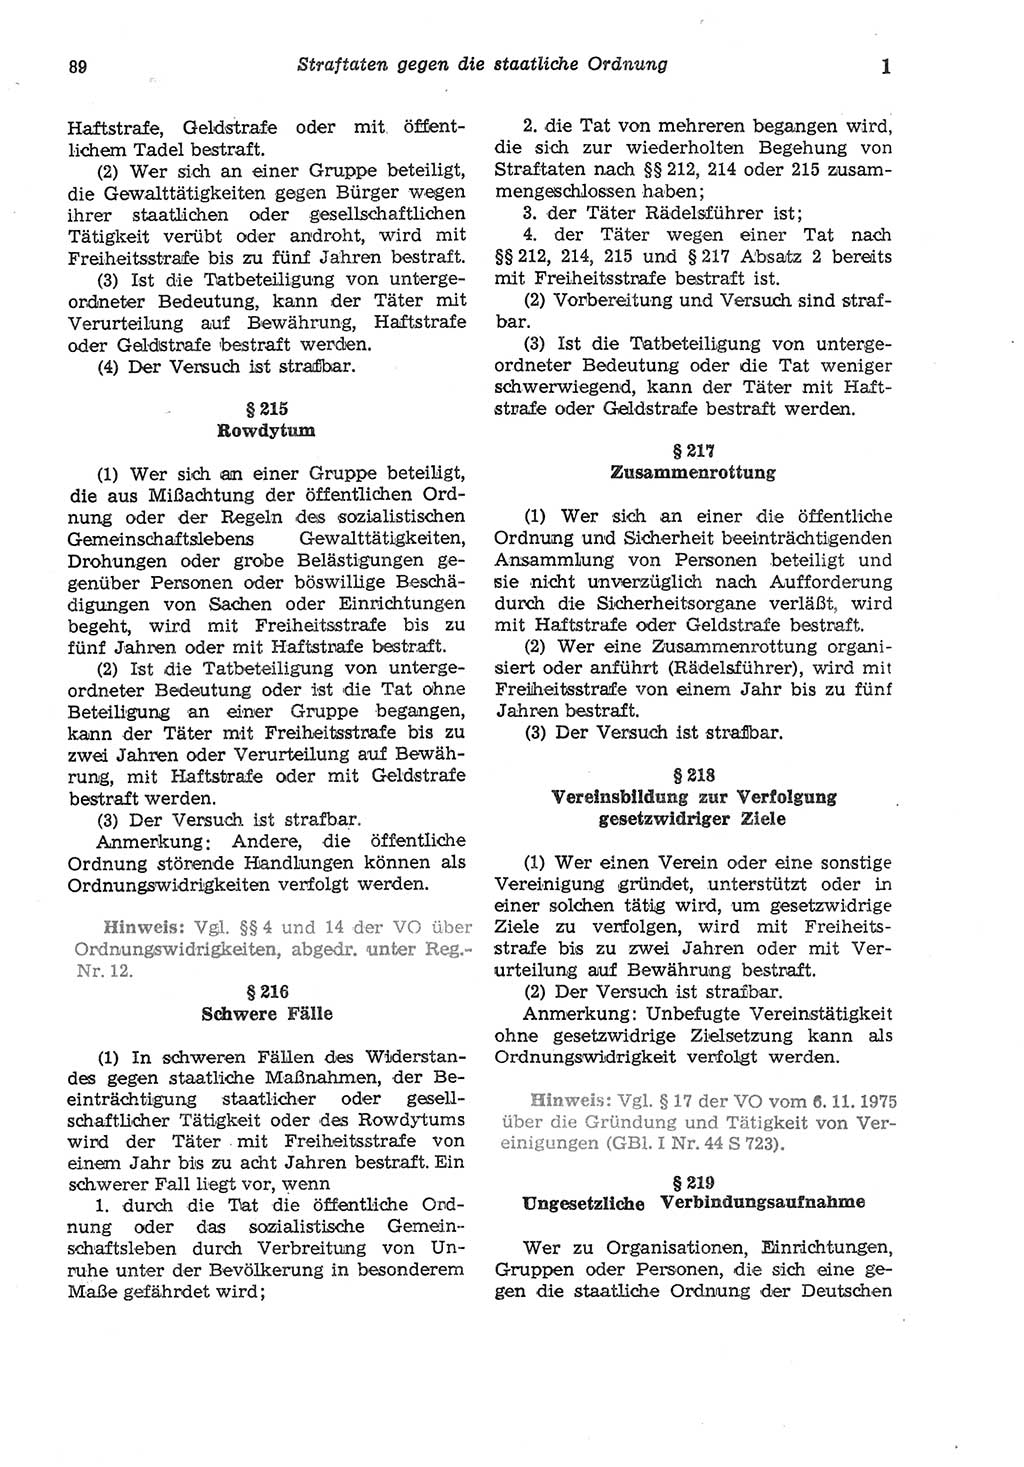 Strafgesetzbuch (StGB) der Deutschen Demokratischen Republik (DDR) und angrenzende Gesetze und Bestimmungen 1975, Seite 89 (StGB DDR Ges. Best. 1975, S. 89)